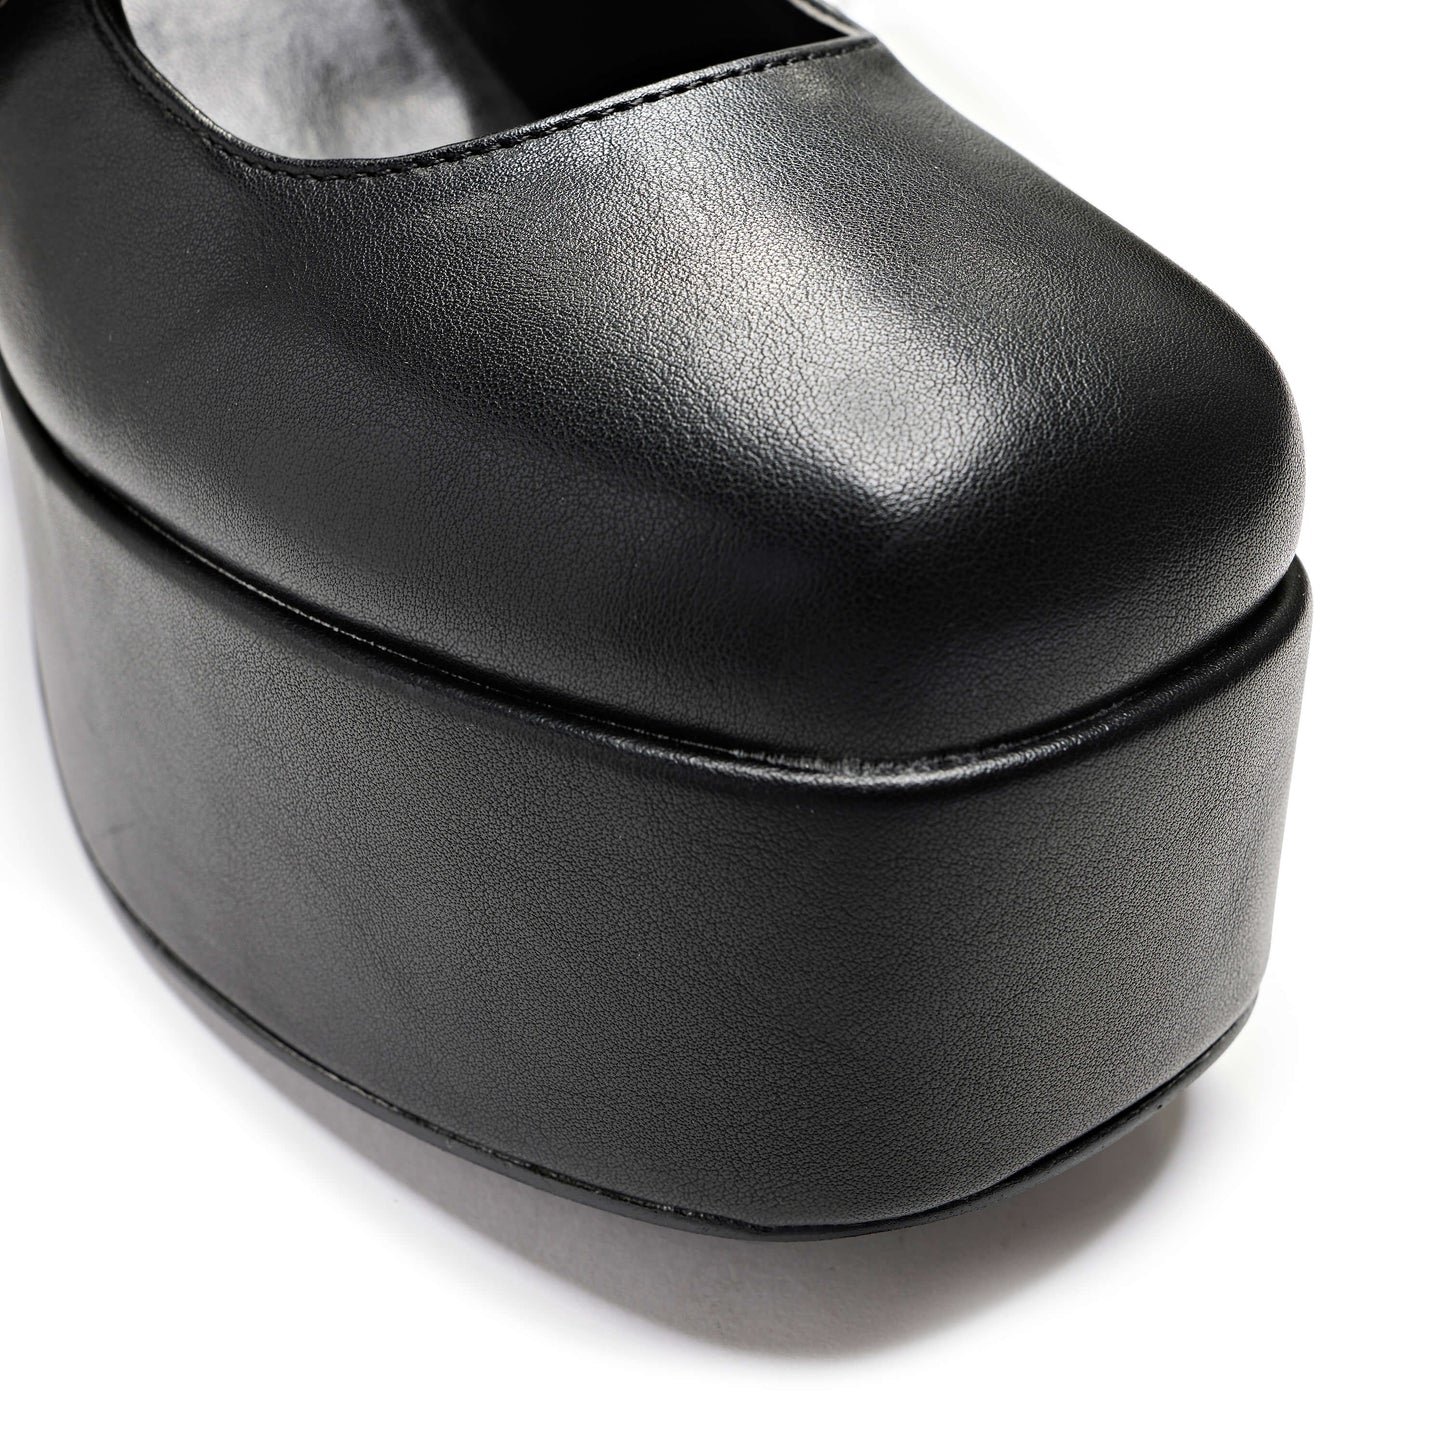 Zeba Black Platform Heels - Shoes - KOI Footwear - Black - Top Detail